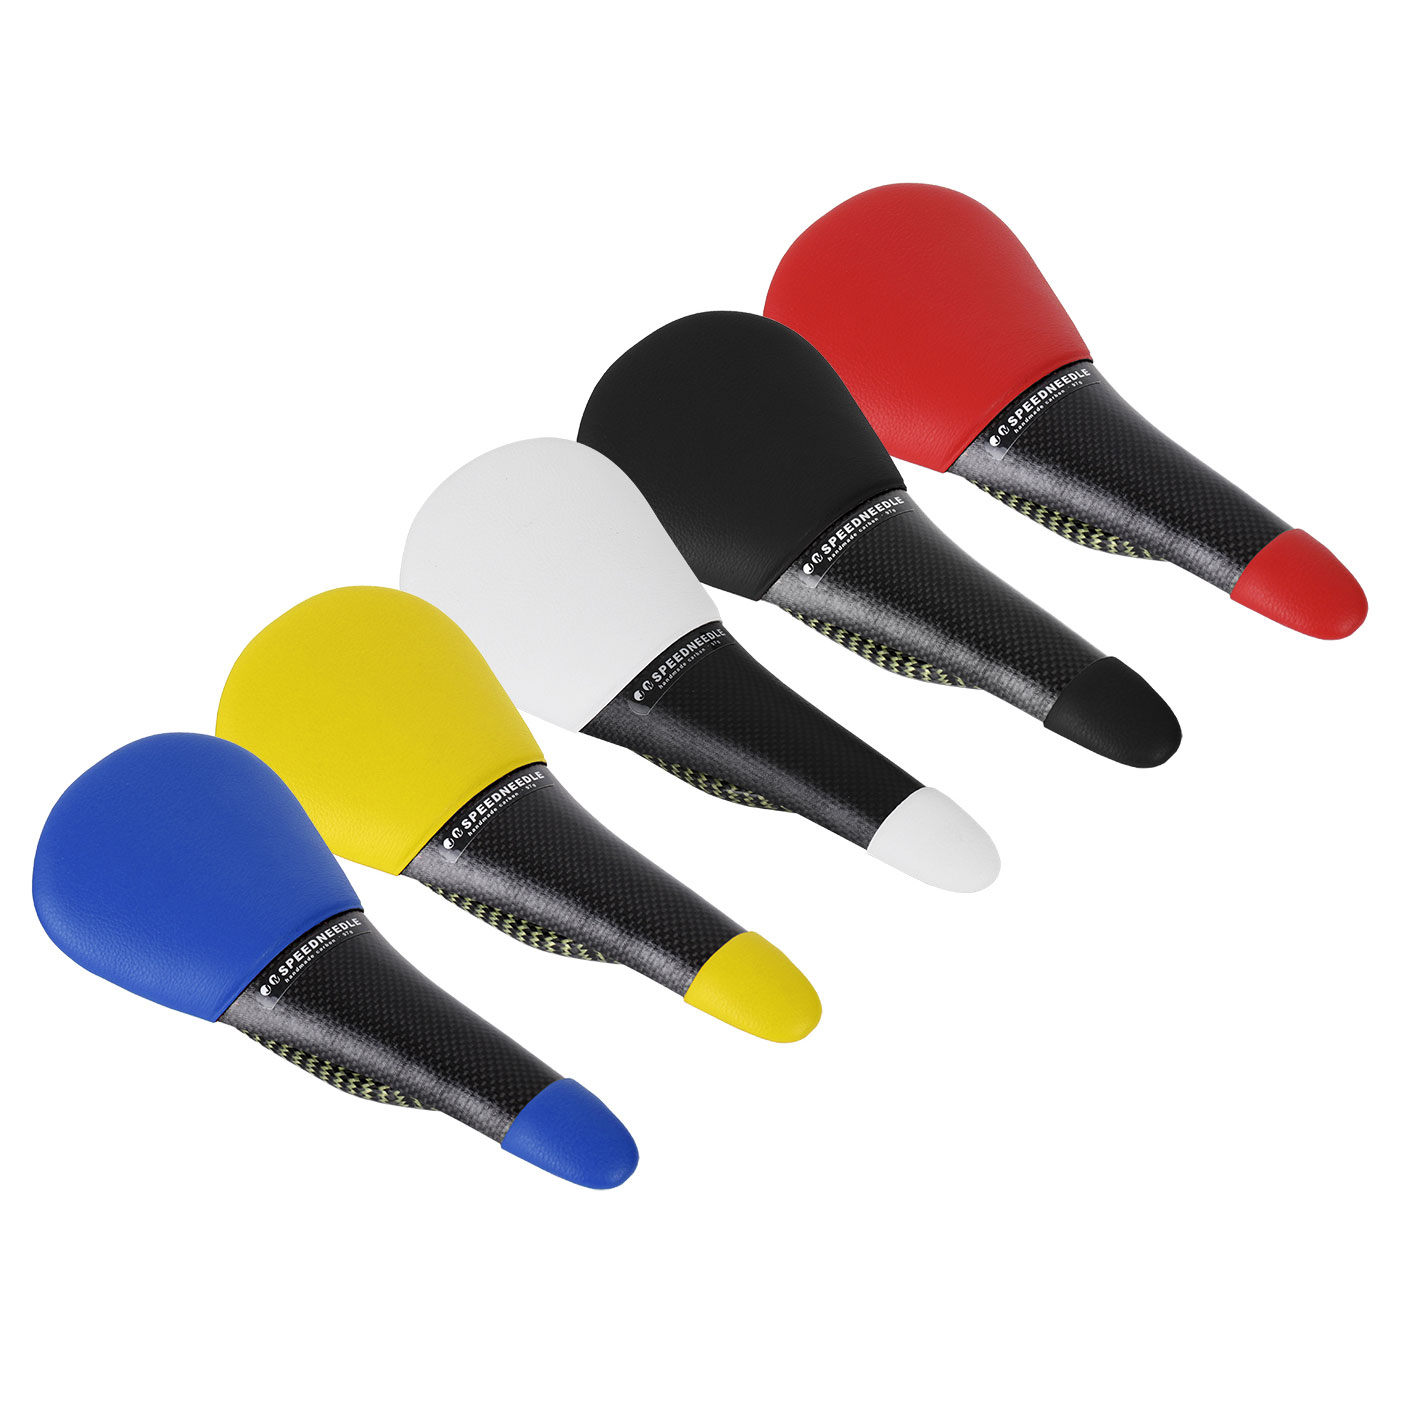 Immagine di Tune Pelle Carbonio Sella - Speedneedle - colori diversi